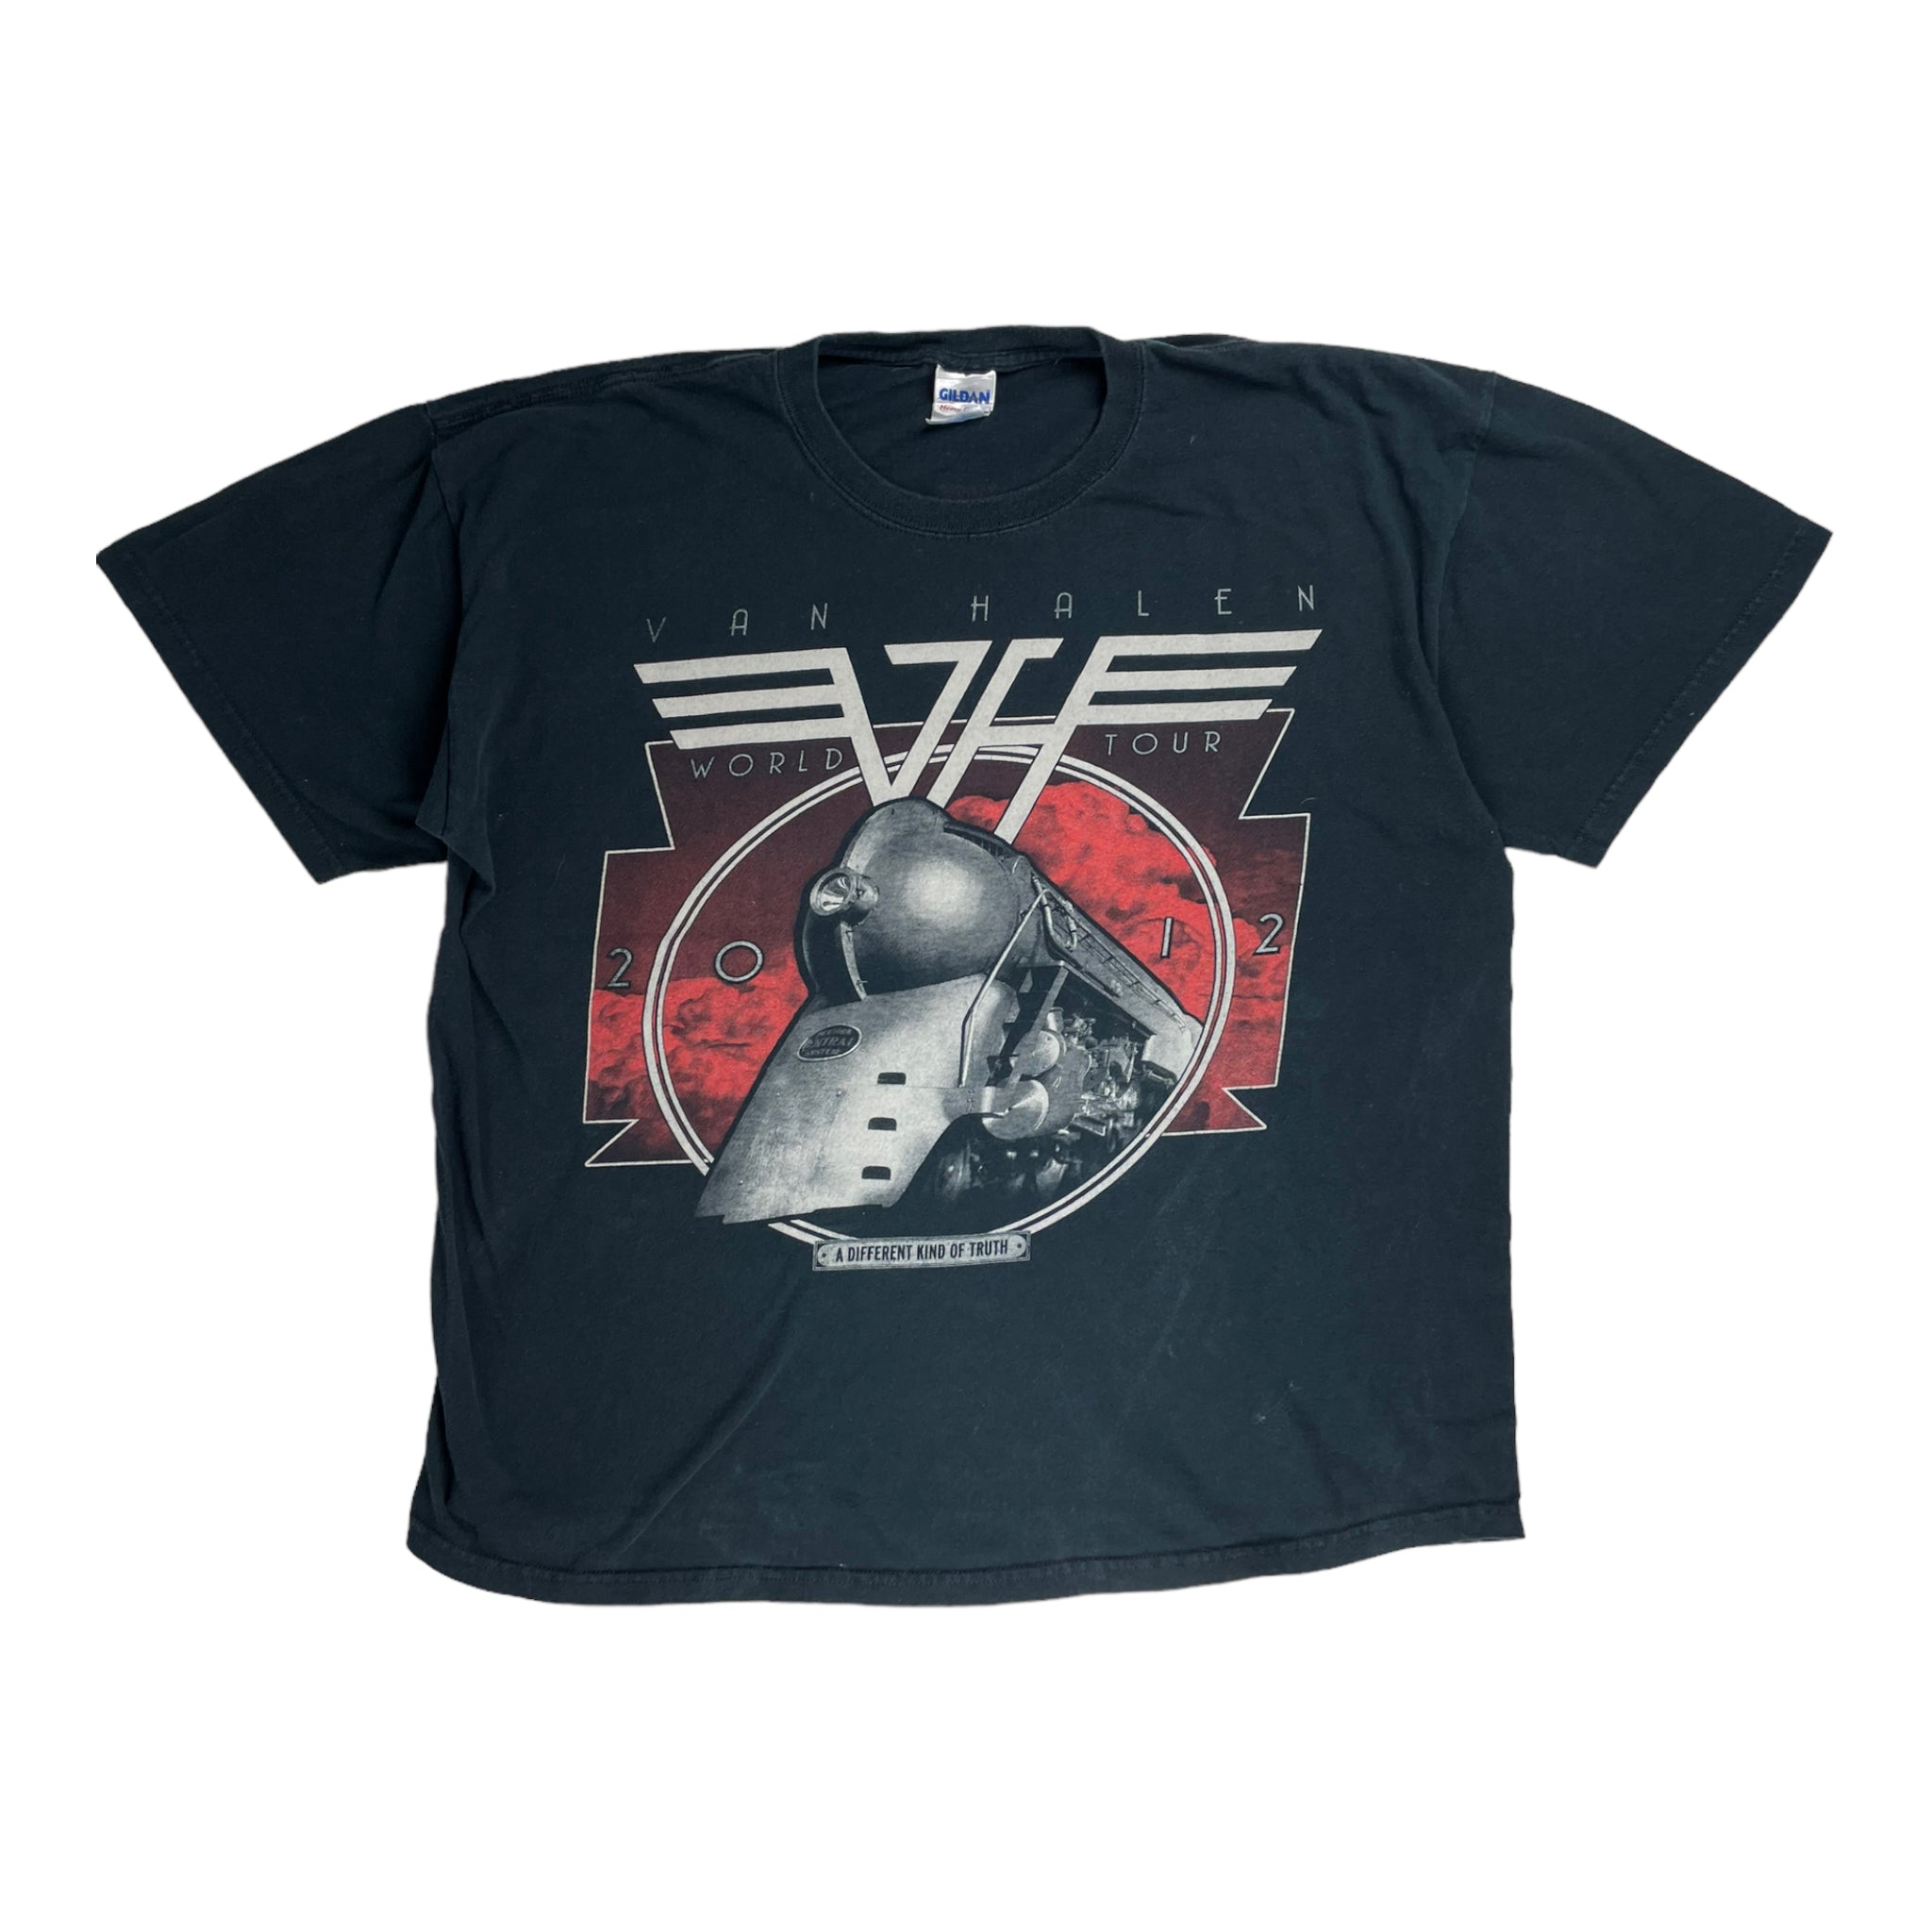 Vintage Van Halen World Tour T Shirt